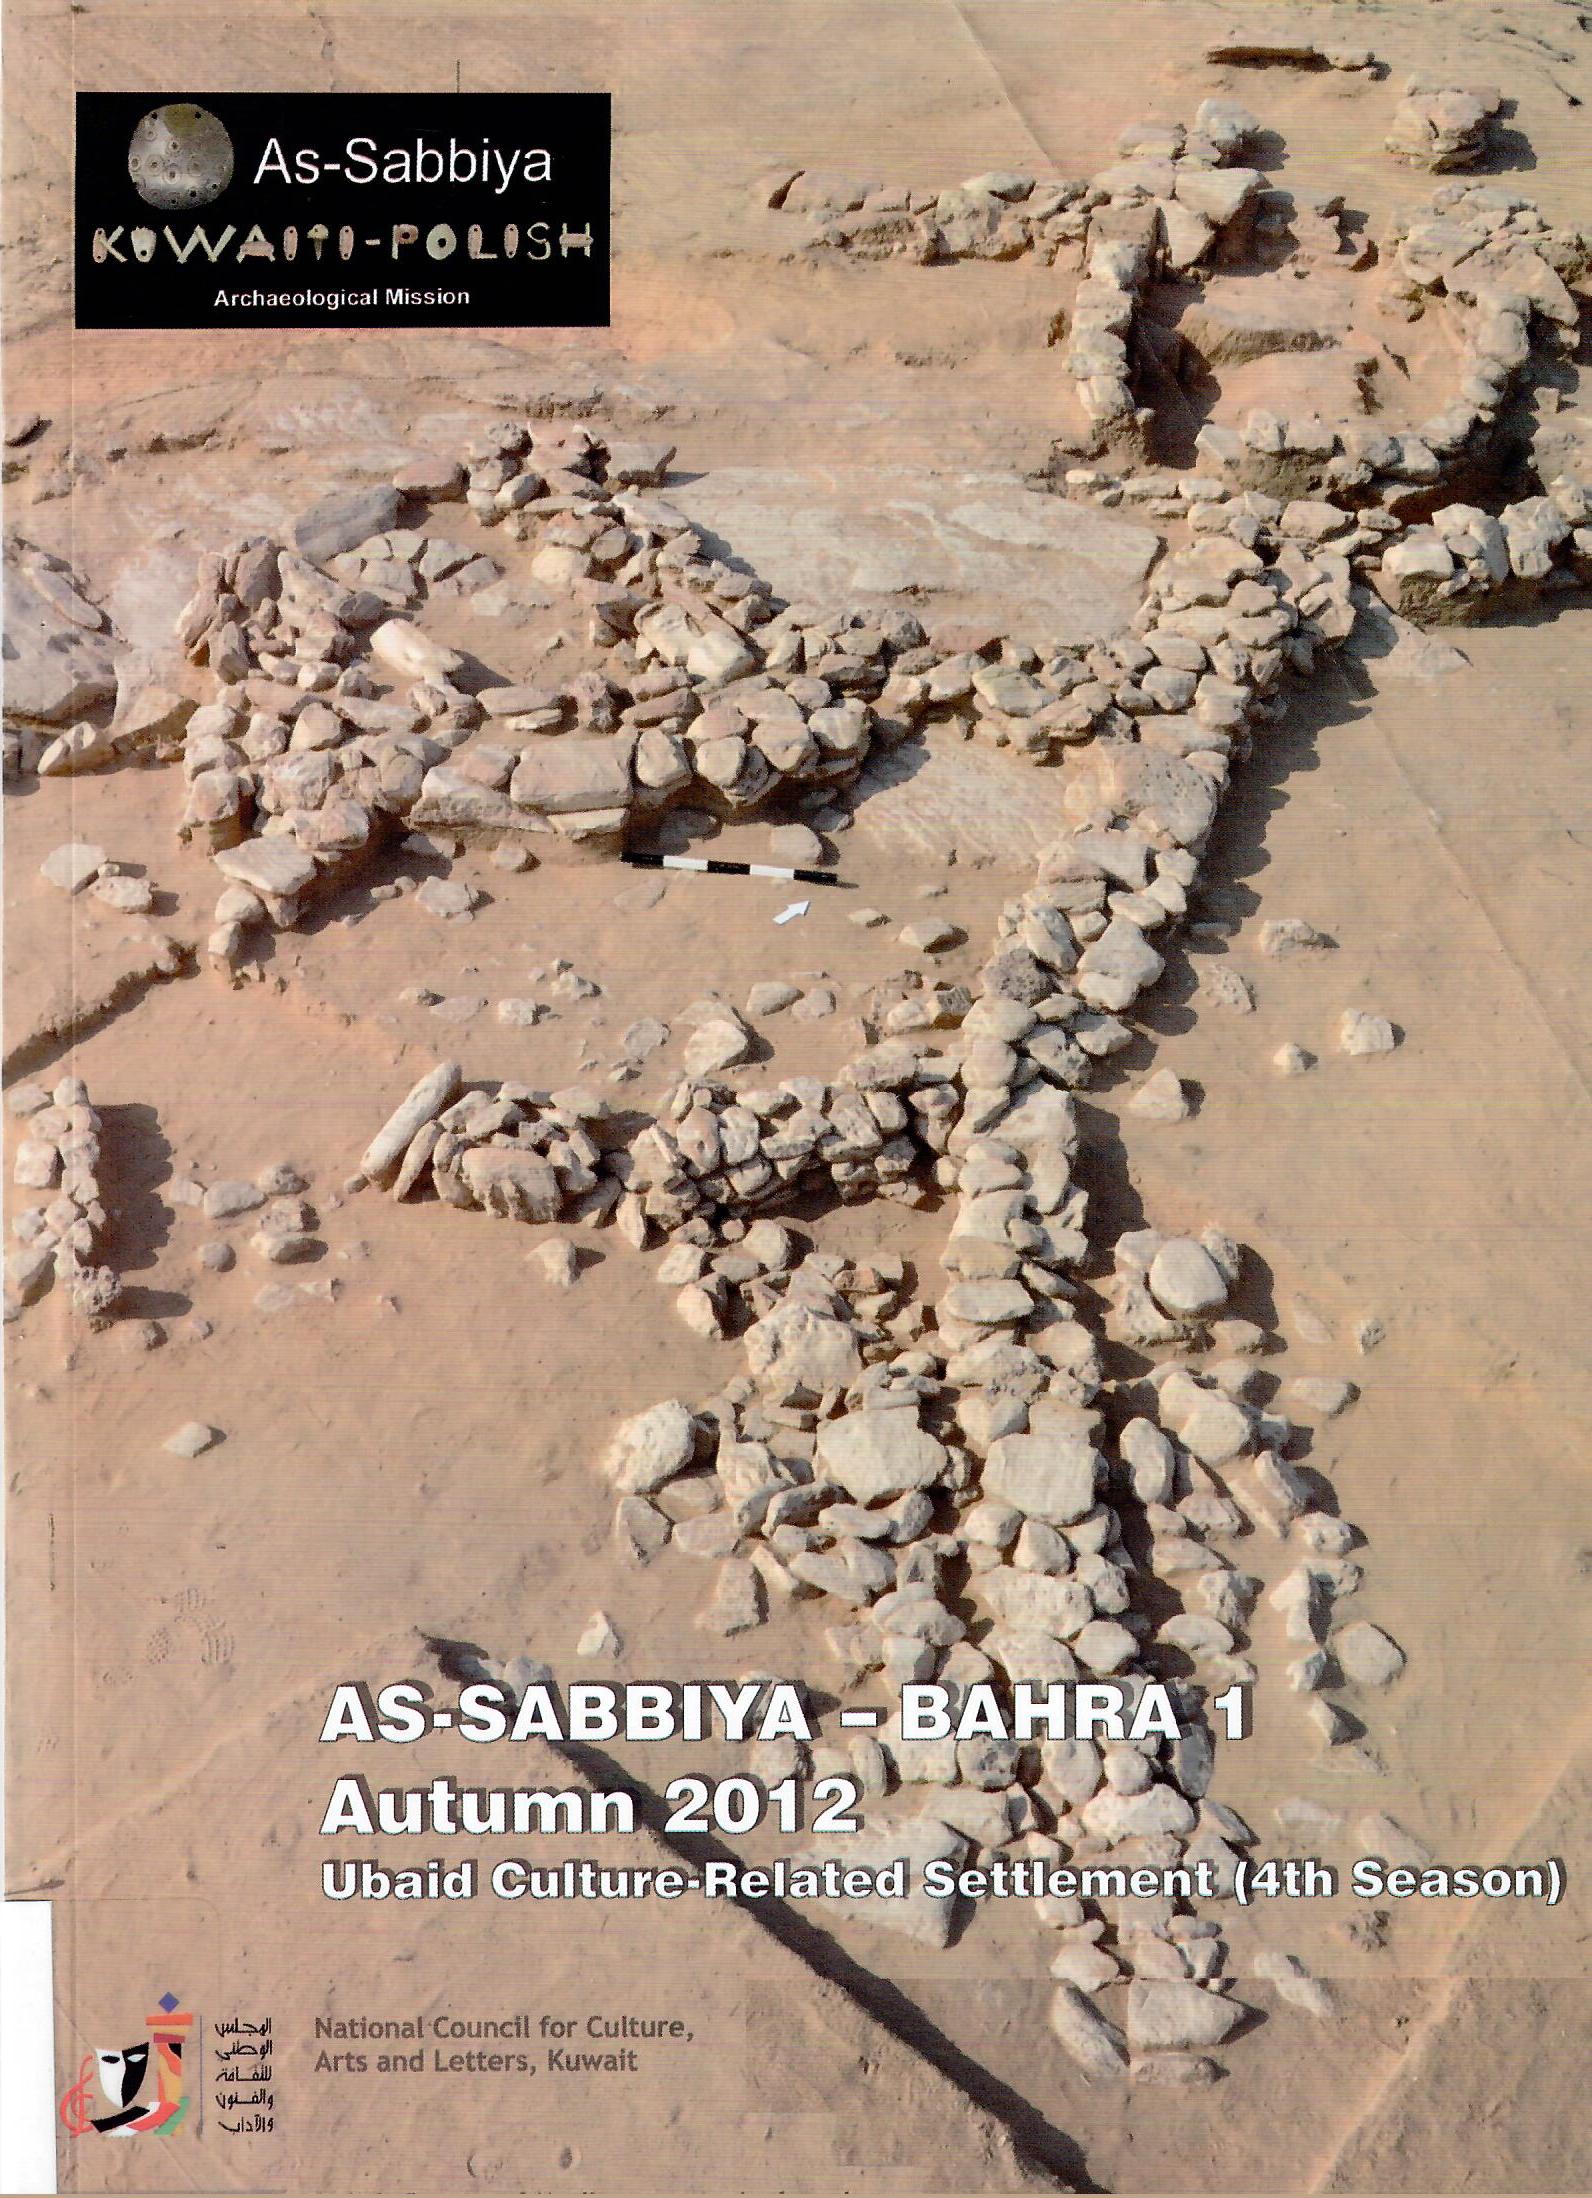 AS-SABBIYA-BAHRA 1